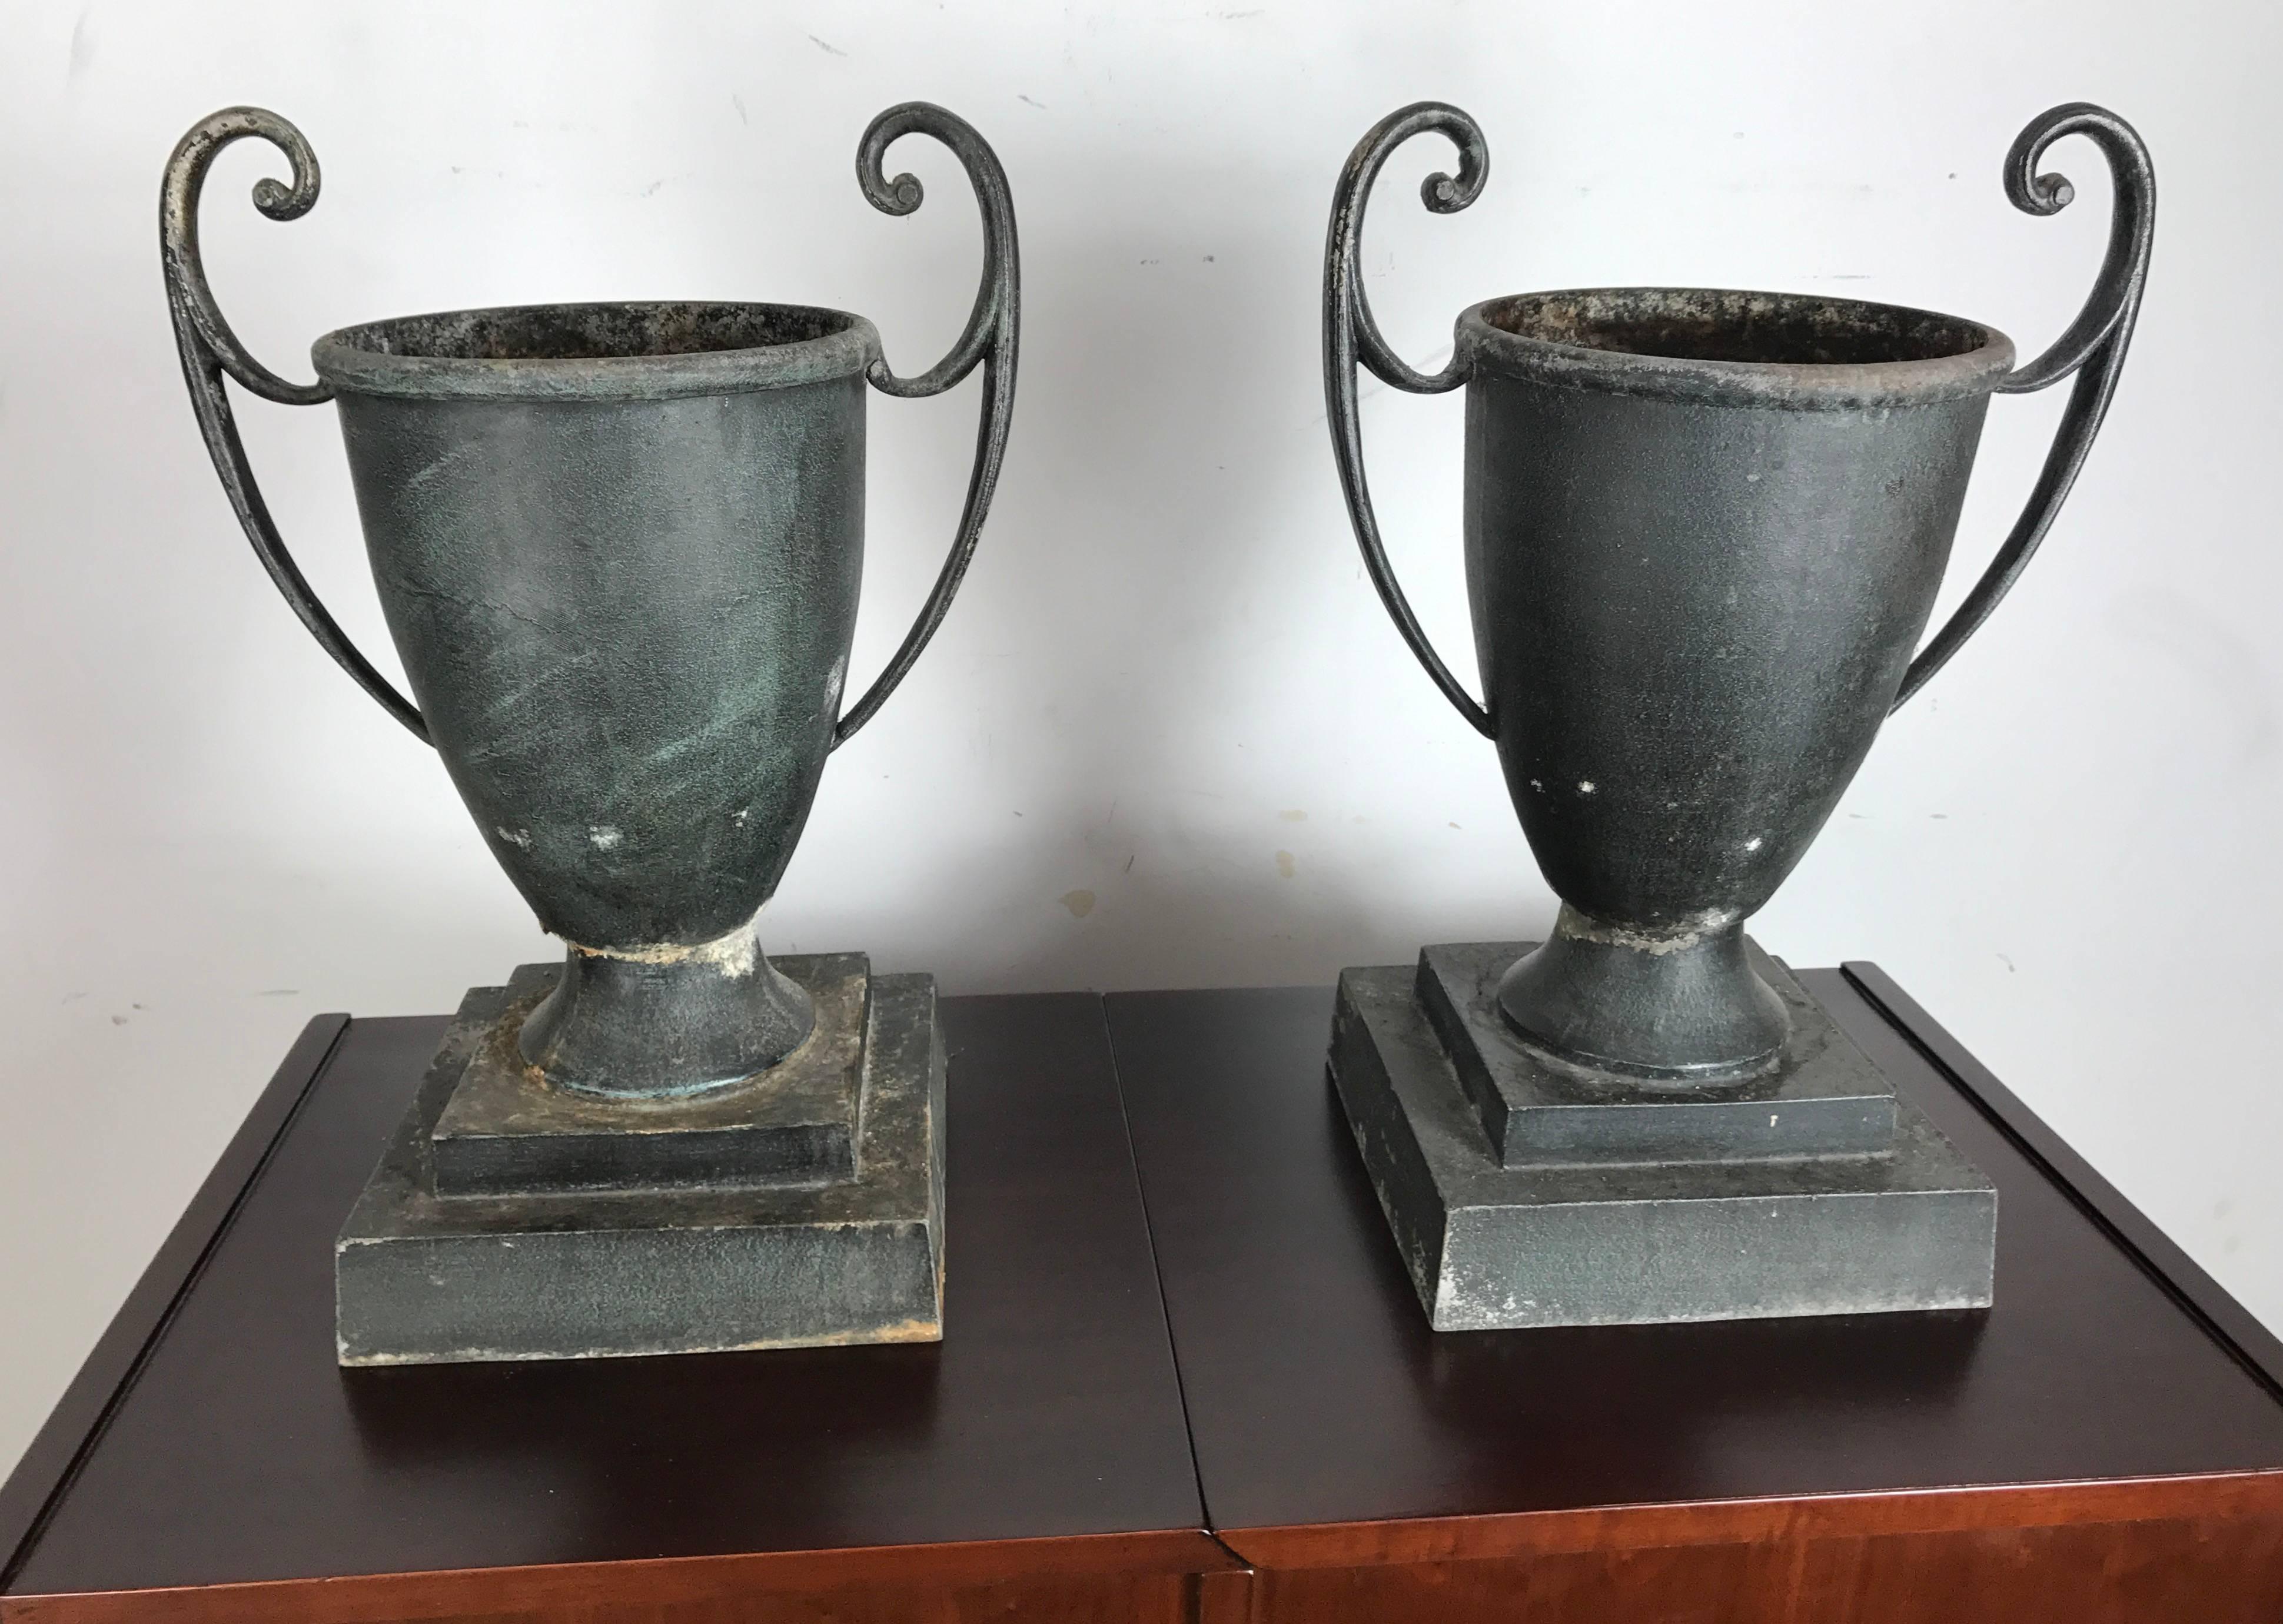 Classic, 1920s cast aluminum art deco handled urns or planters exquisite form. Retains original distressed patina.